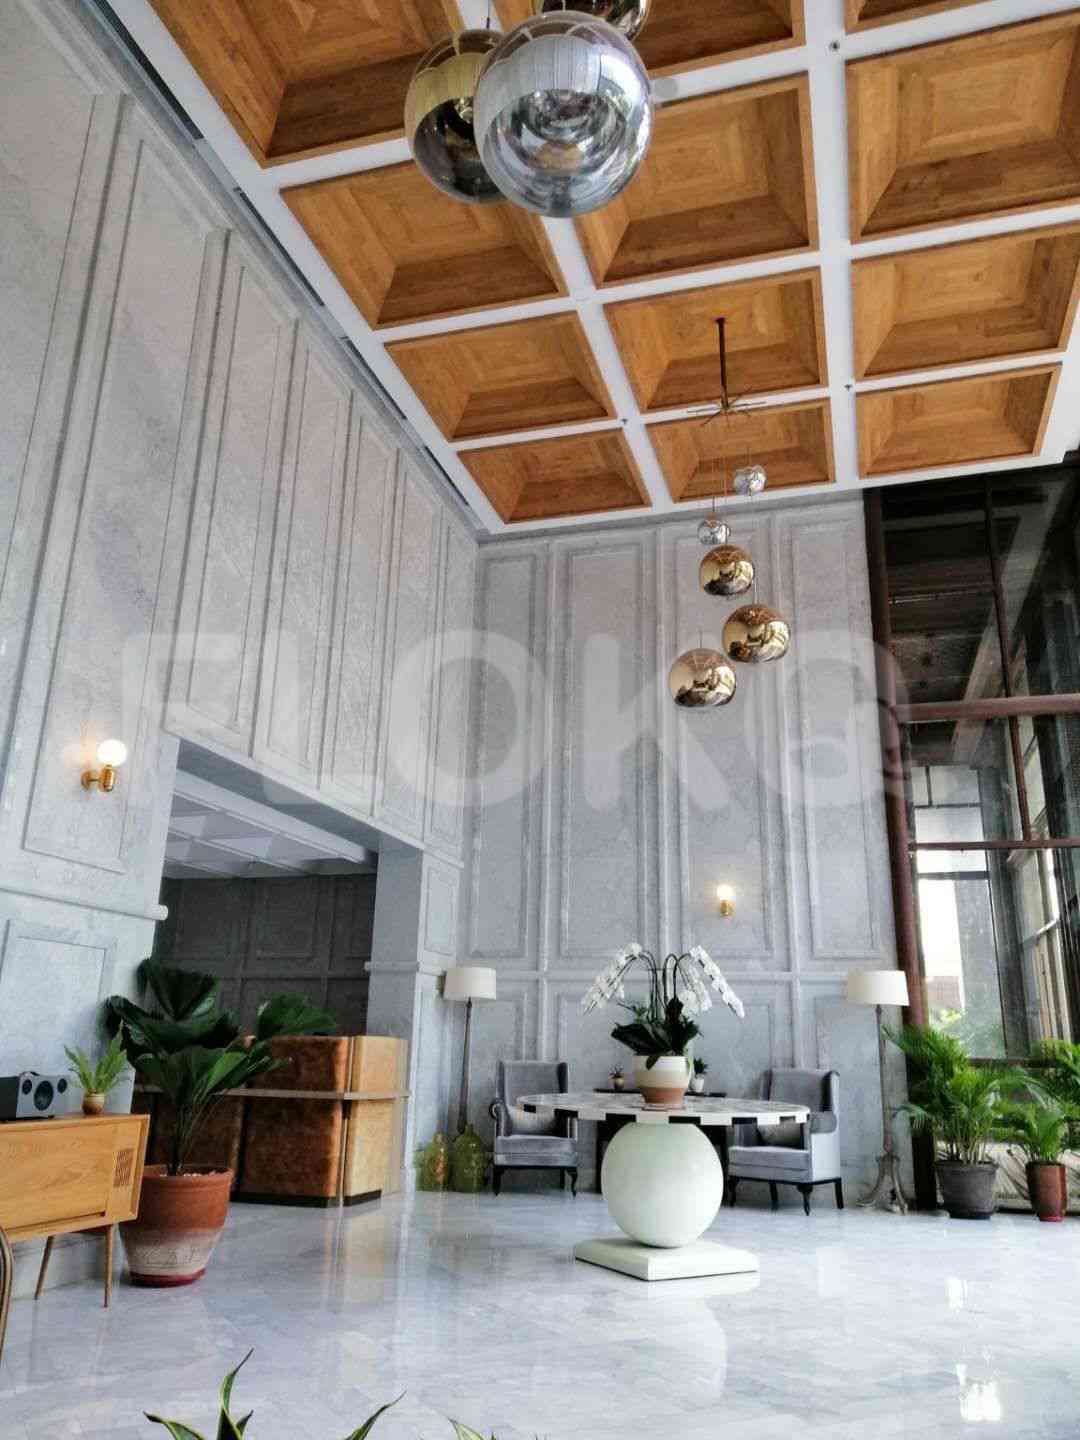 2 Bedroom on 18th Floor for Rent in Sudirman Suites Jakarta - fsu69e 20